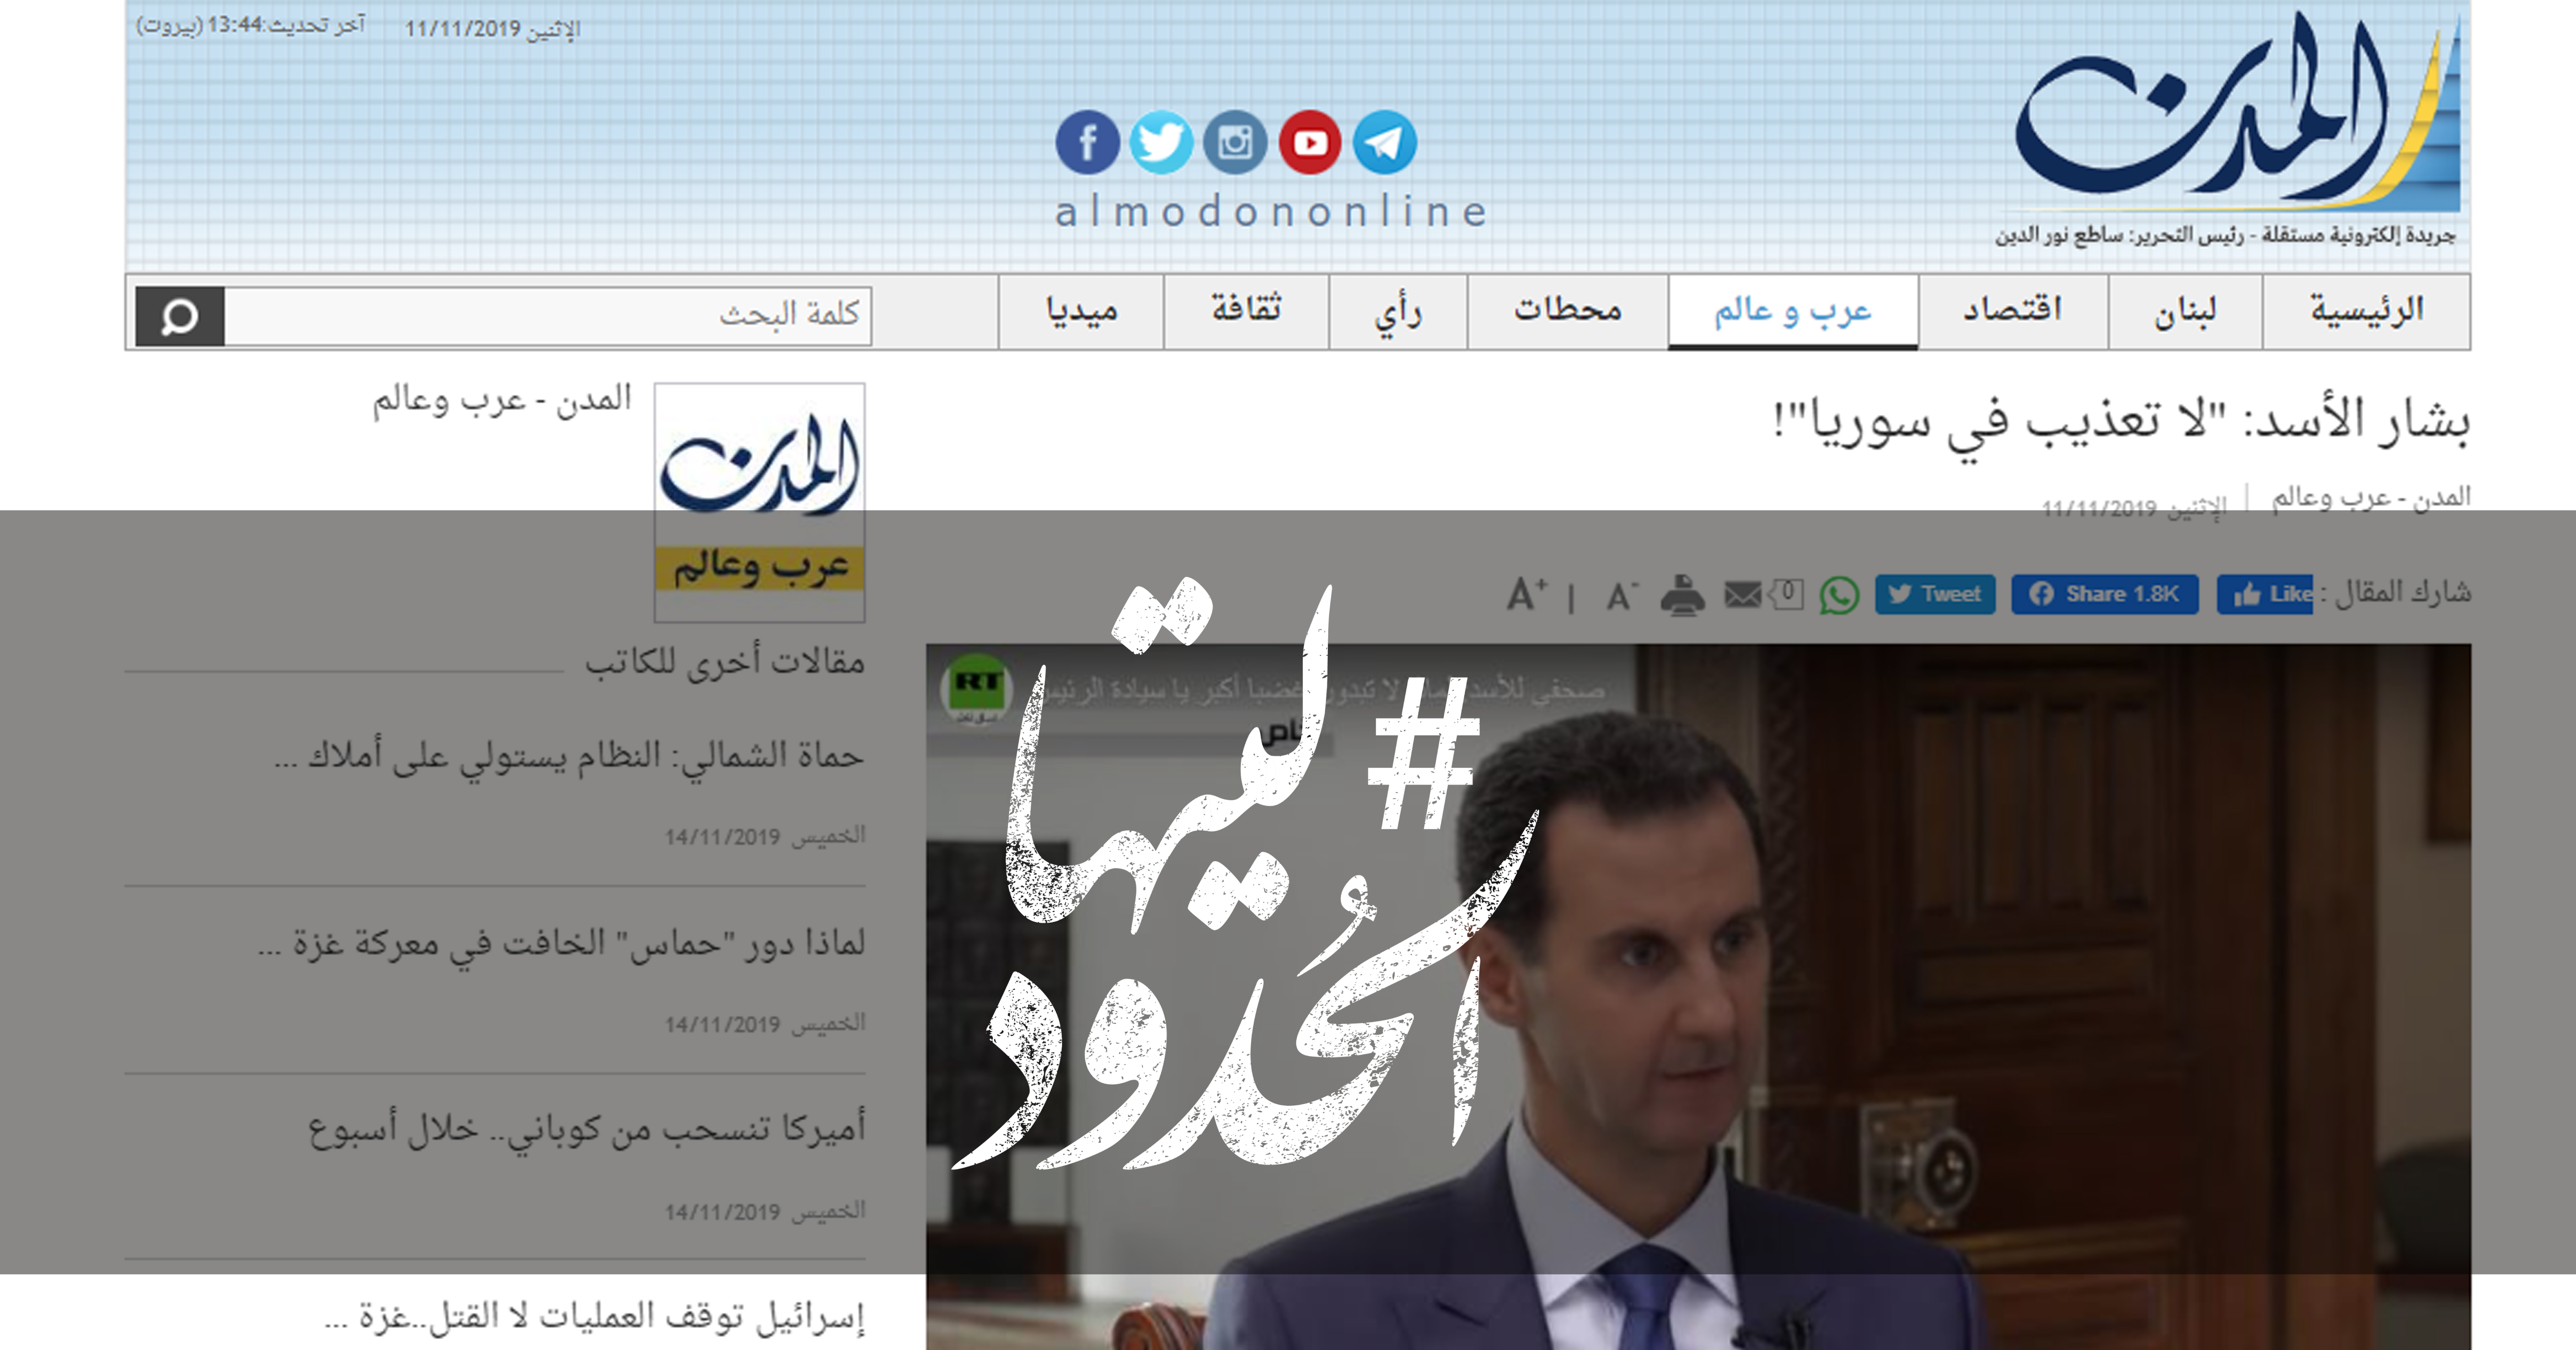 صورة بشار الأسد: “لا تعذيب في سوريا”